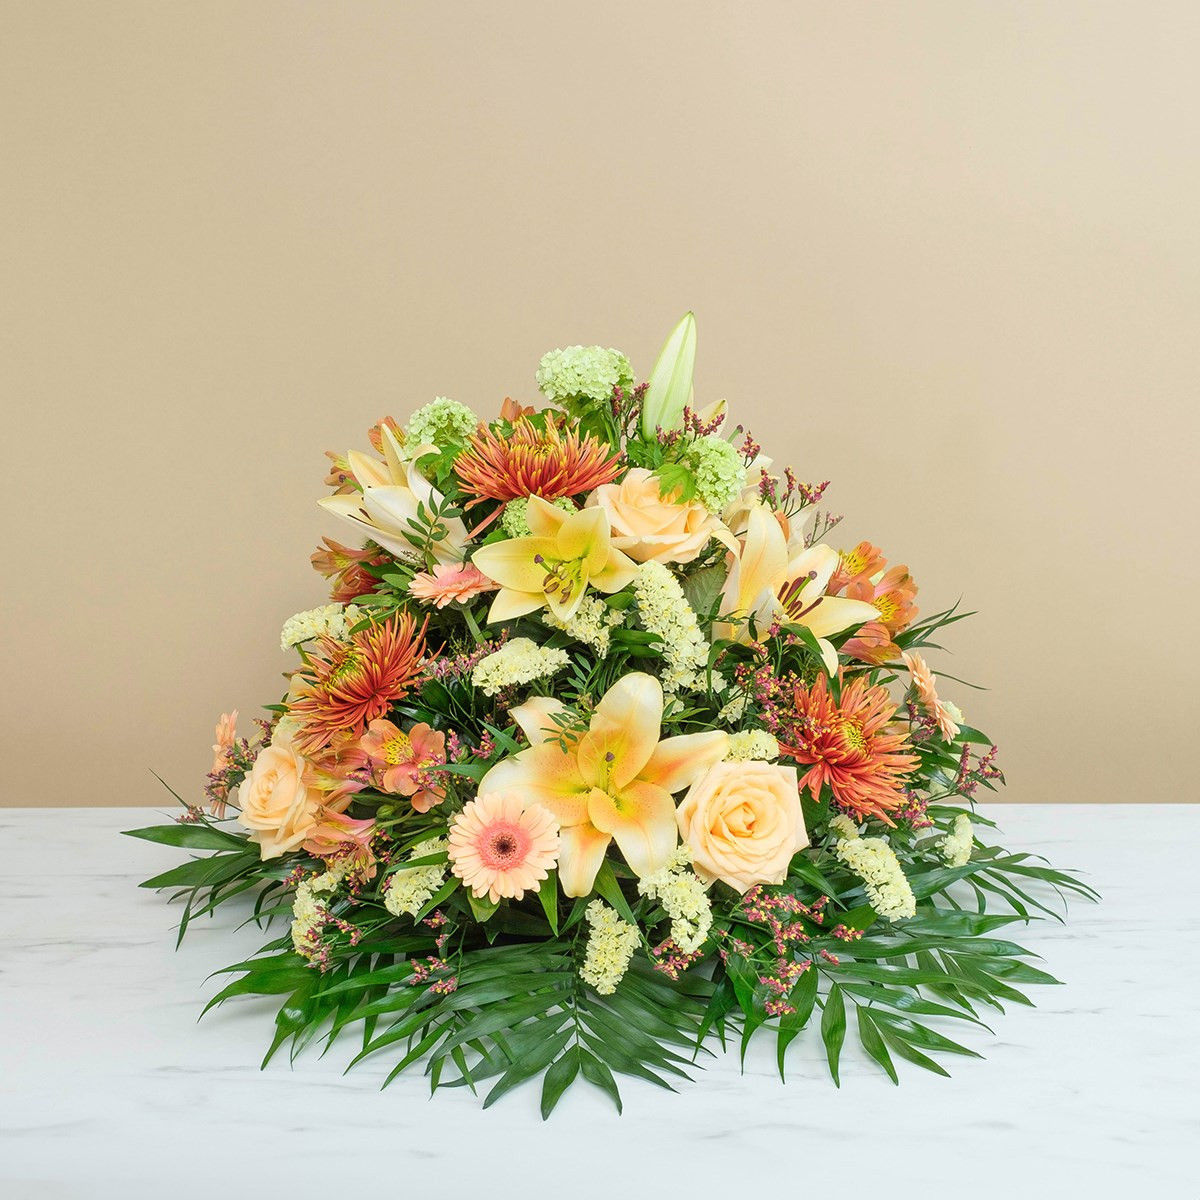 Wiązanka pogrzebowa w pomarańczowej tonacji z róż, lilii i chryzantem